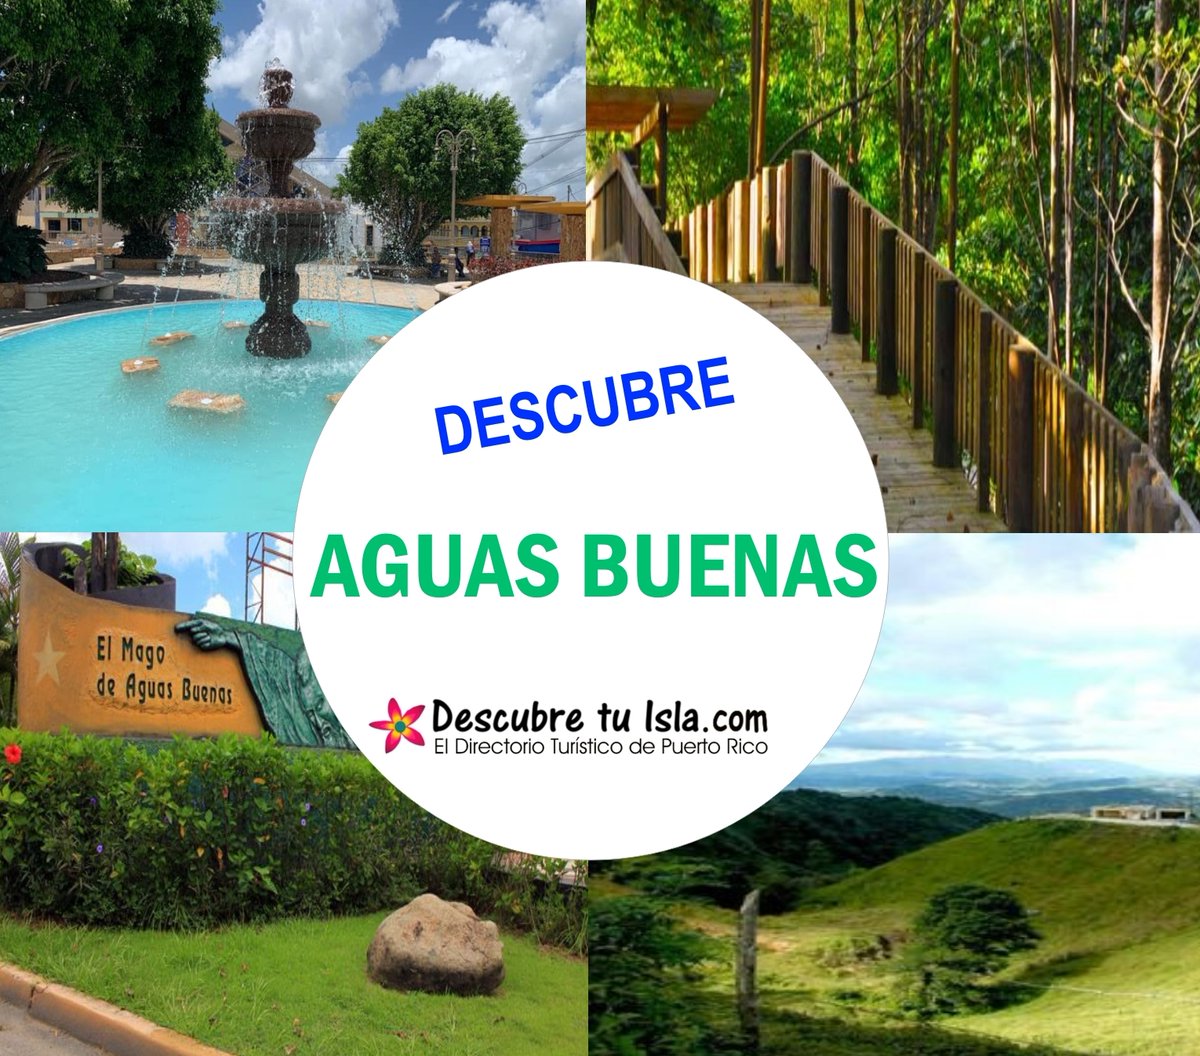 Descubre el pueblo de ¡Aguas Buenas! #AguasBuenas #PuertoRico #DescbreTuIsla #Viajes #Turismo #Vacaciones #Tourist #Travel #Traveler #RoadTrip #RoadTrip